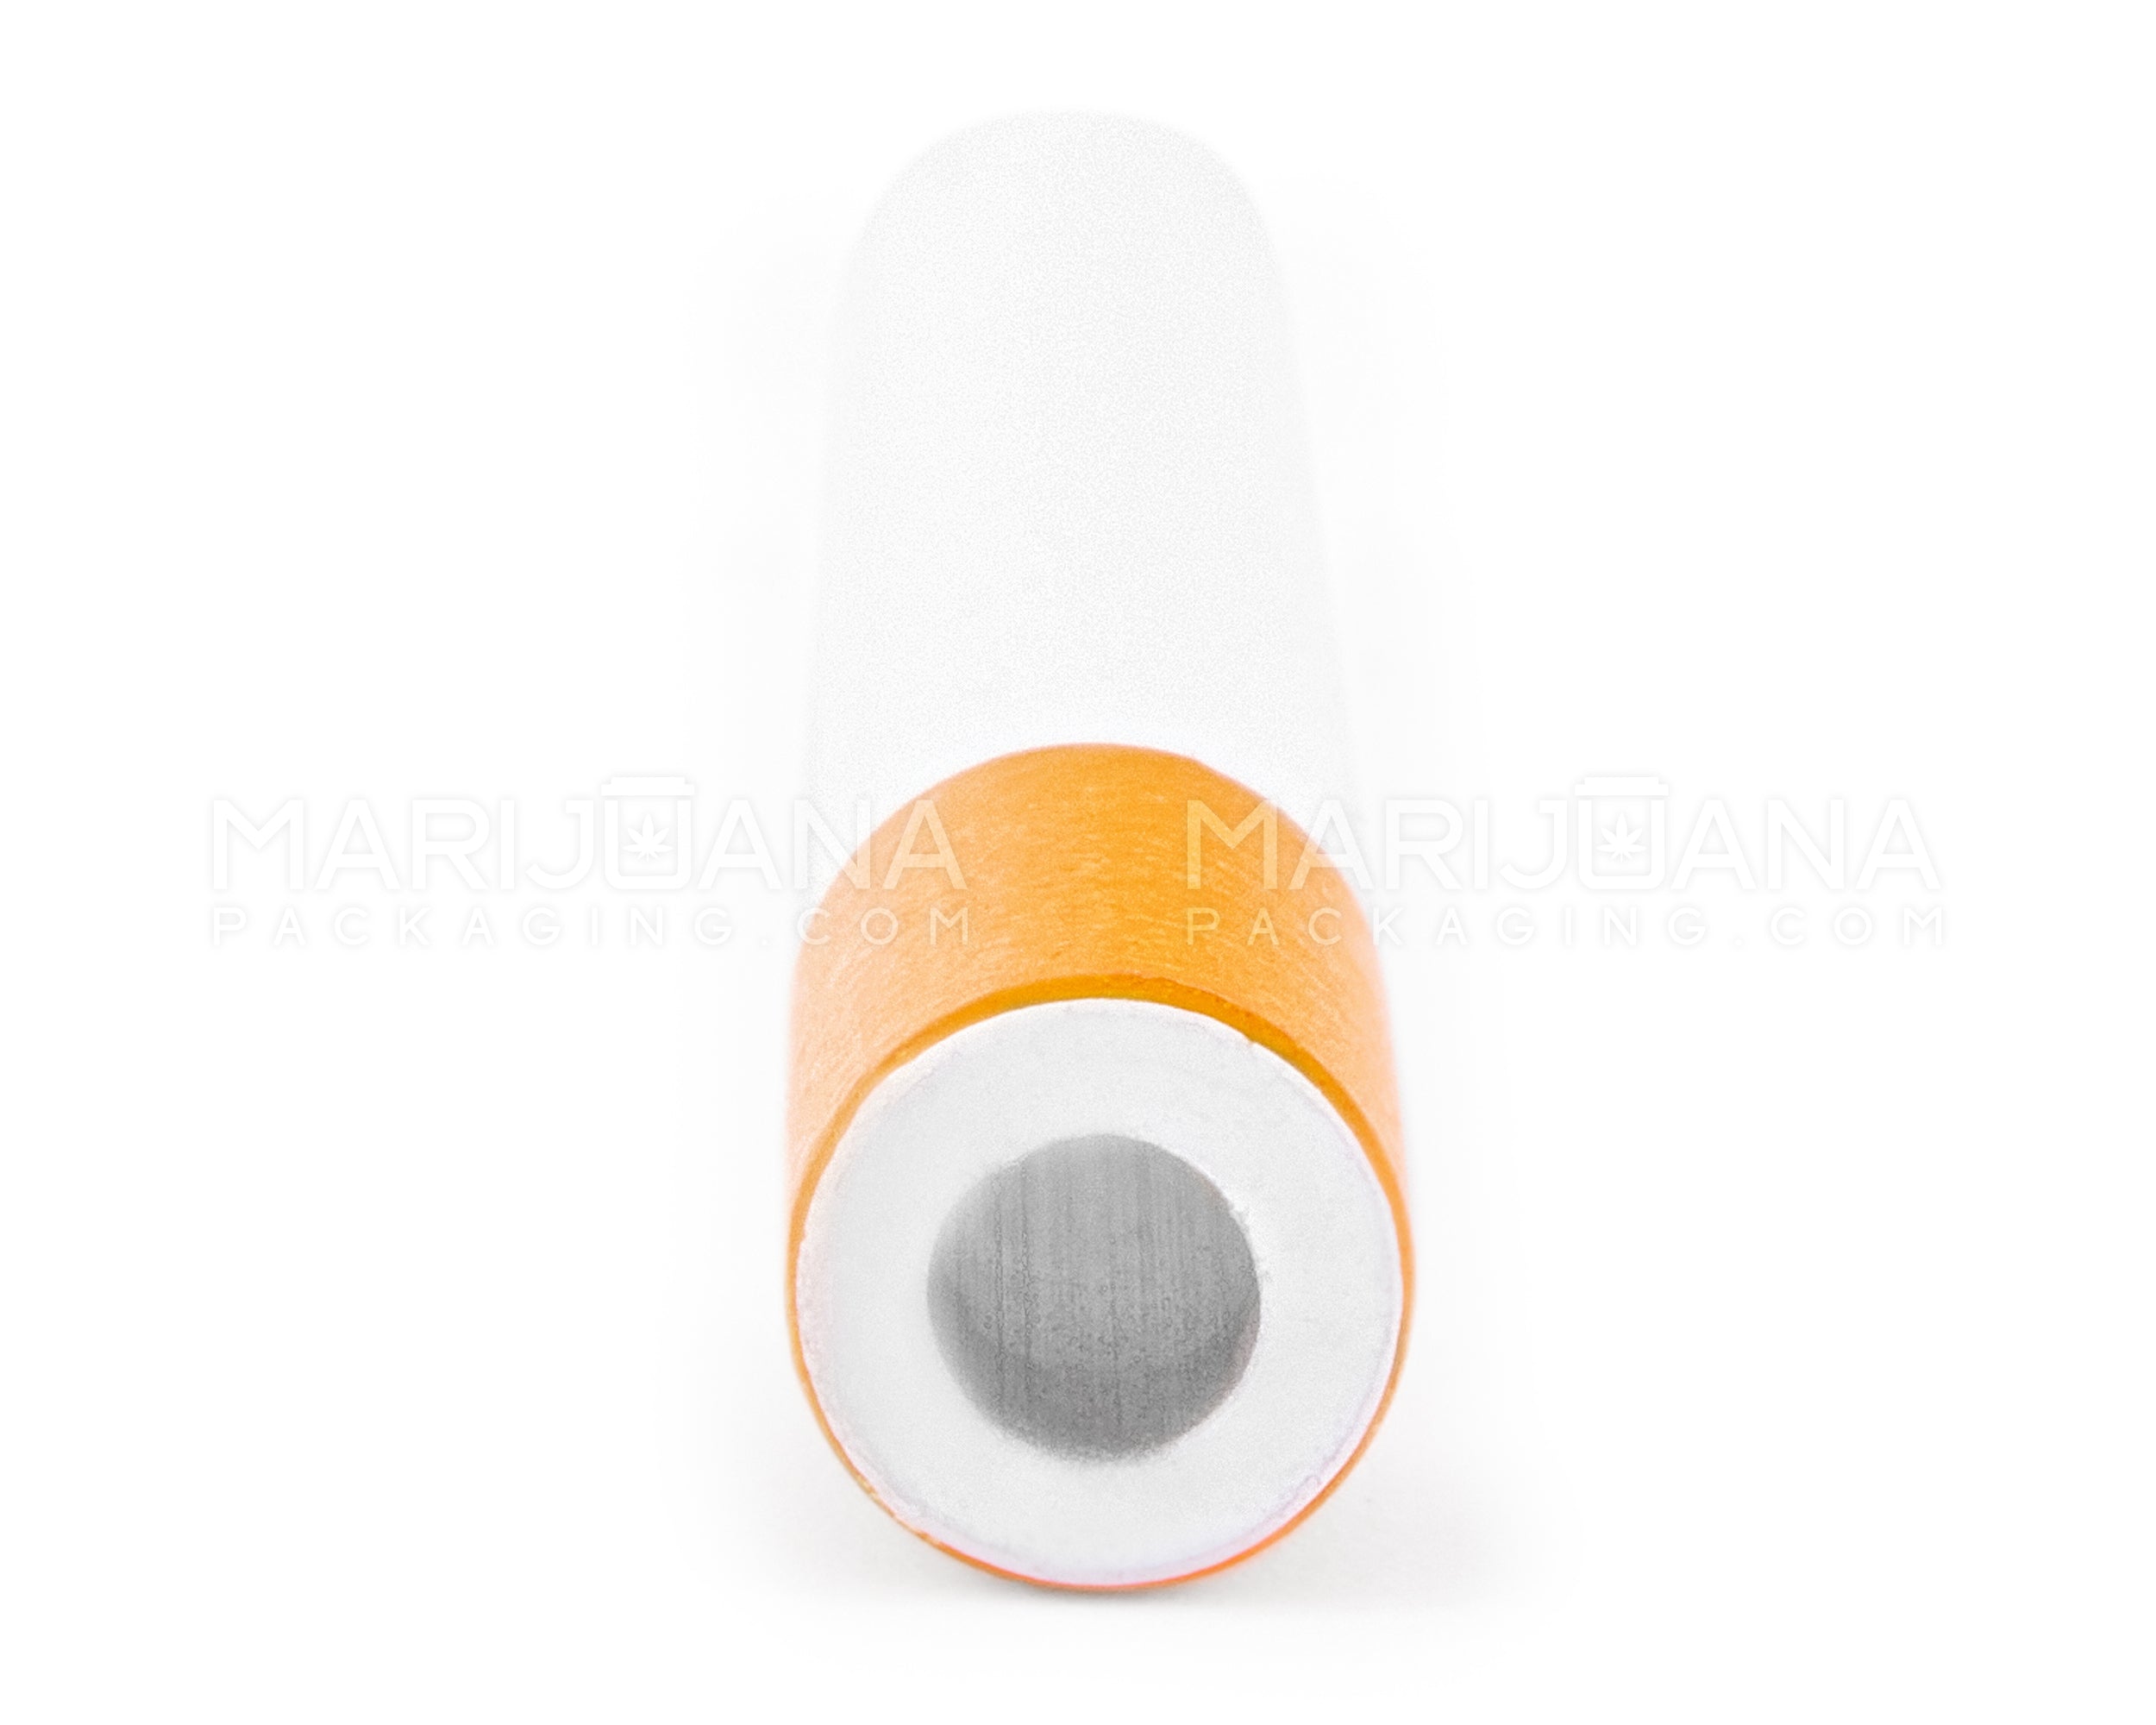 Cigarette Chillum Hand Pipe | 3in Long - Metal - Orange & White - 4